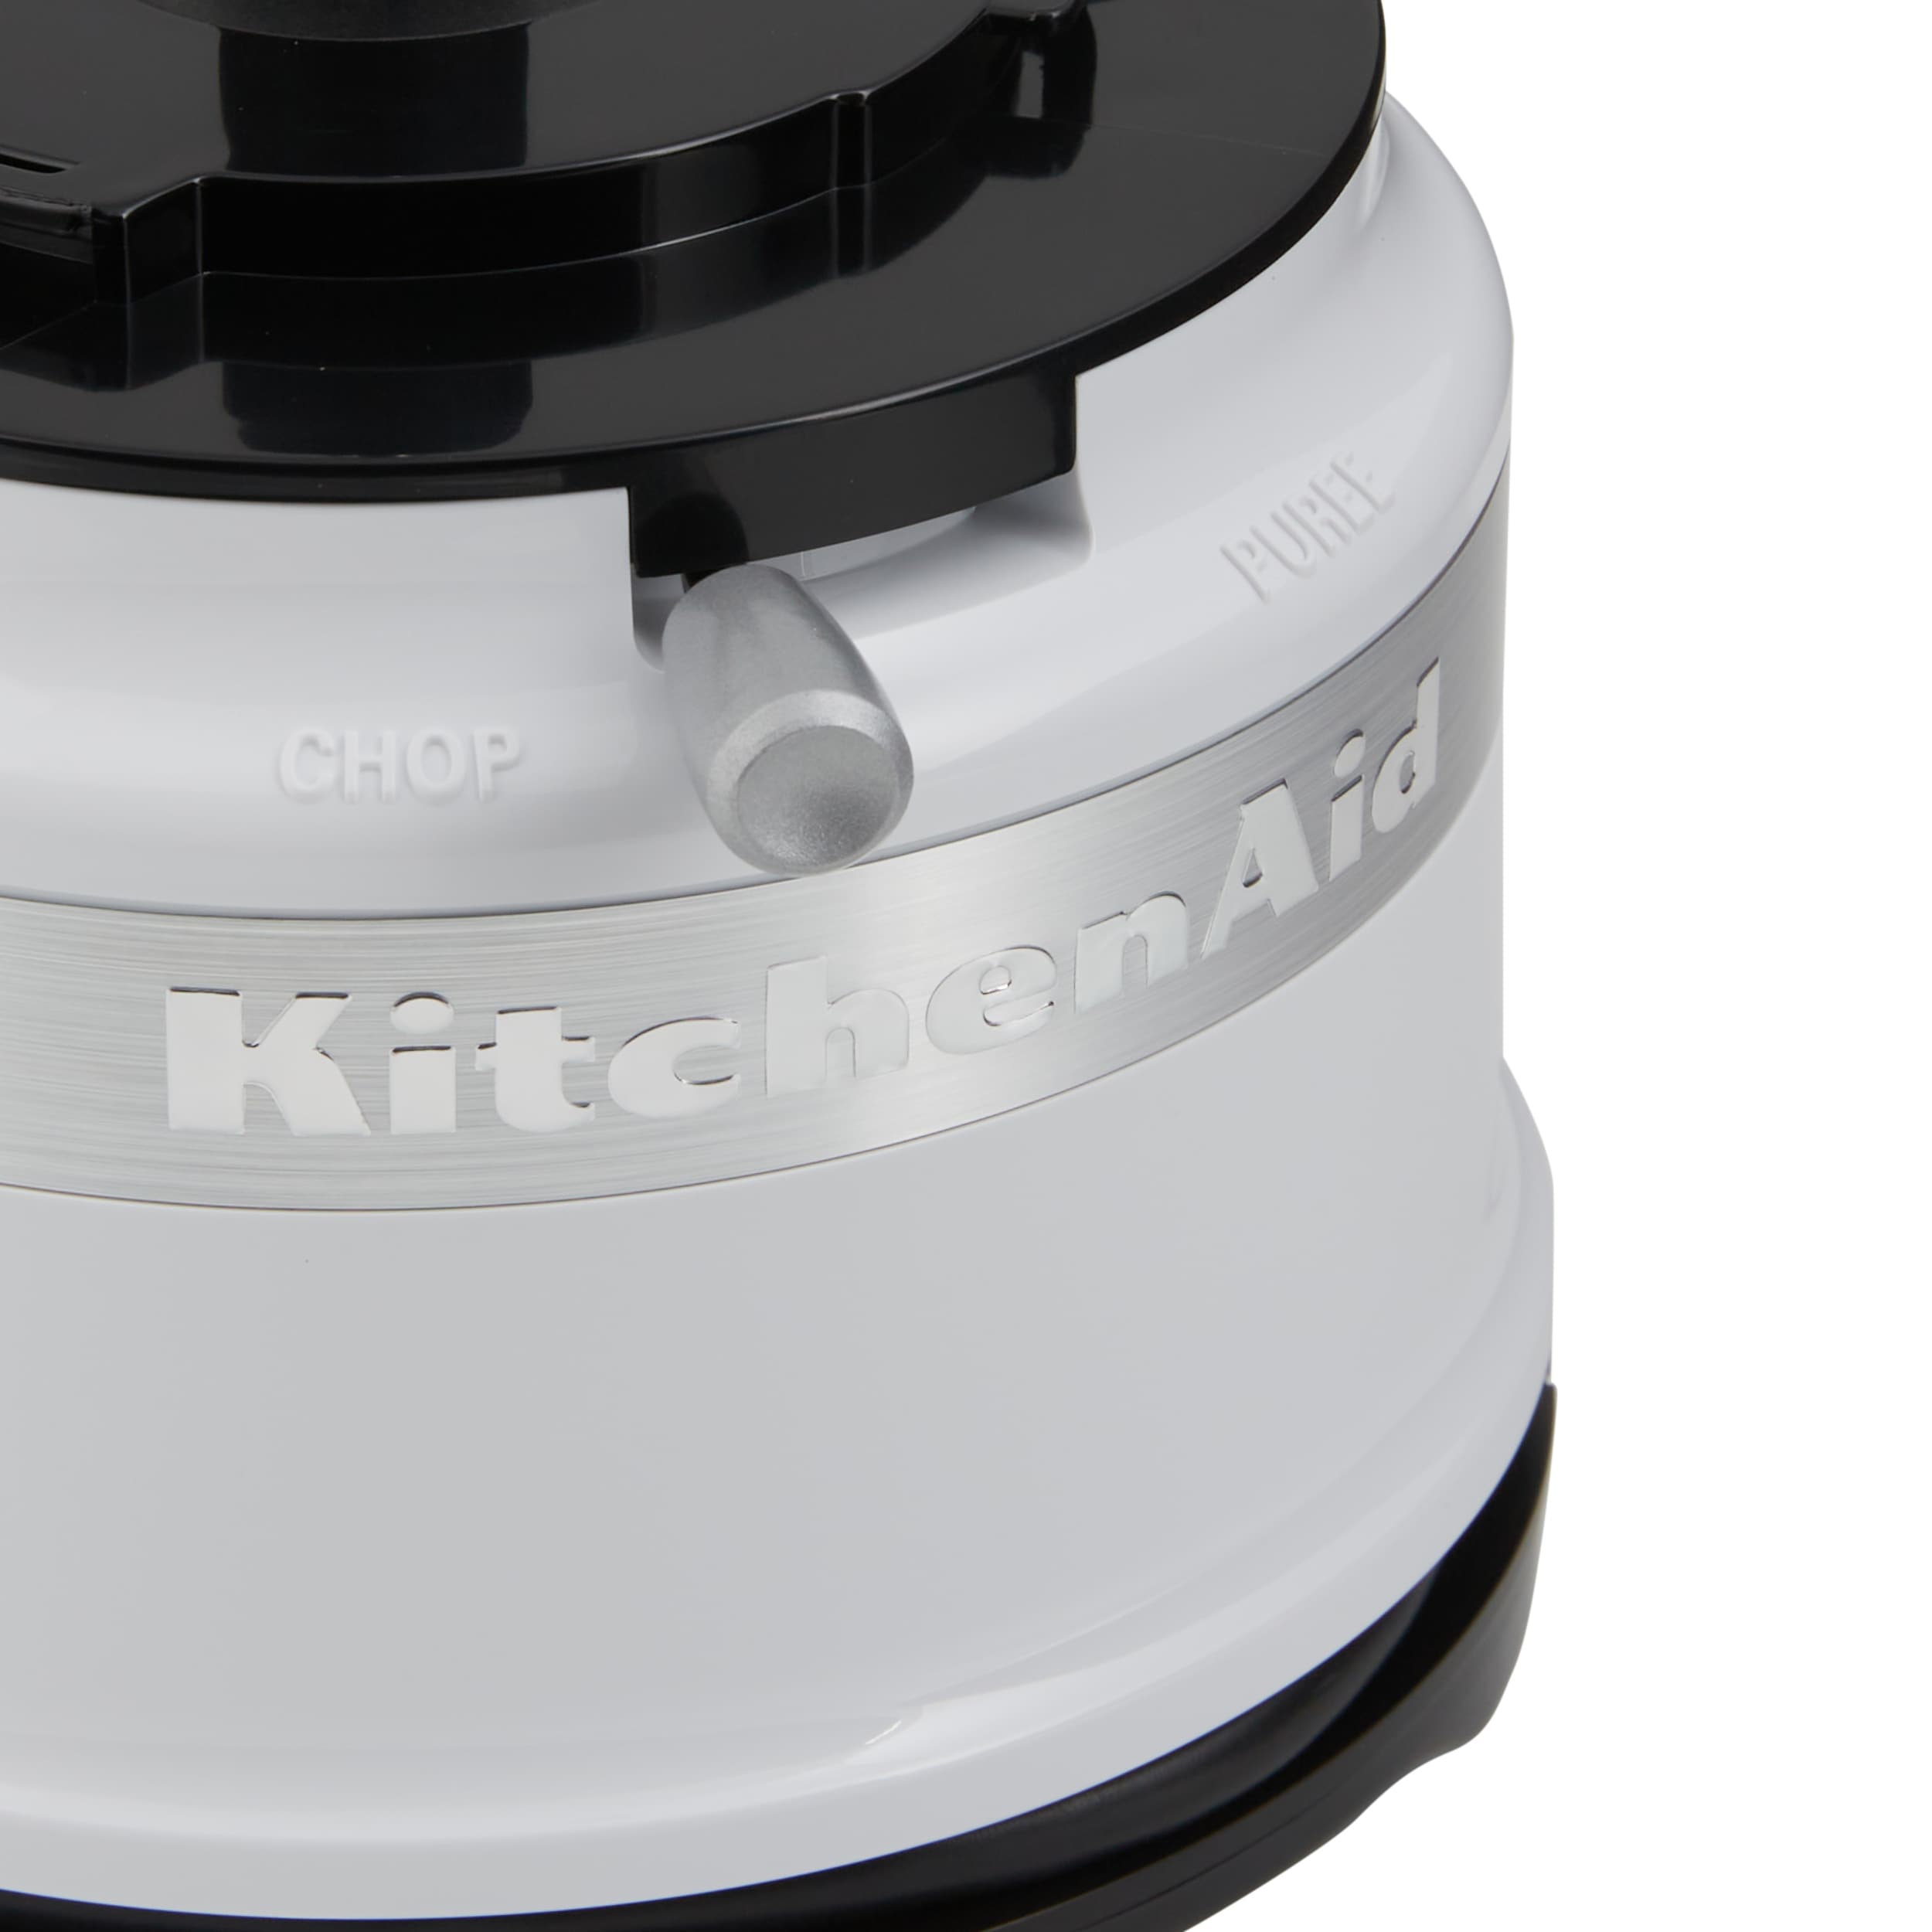 KitchenAid 3.5 Cups-Watt White Mini Food Chopper at